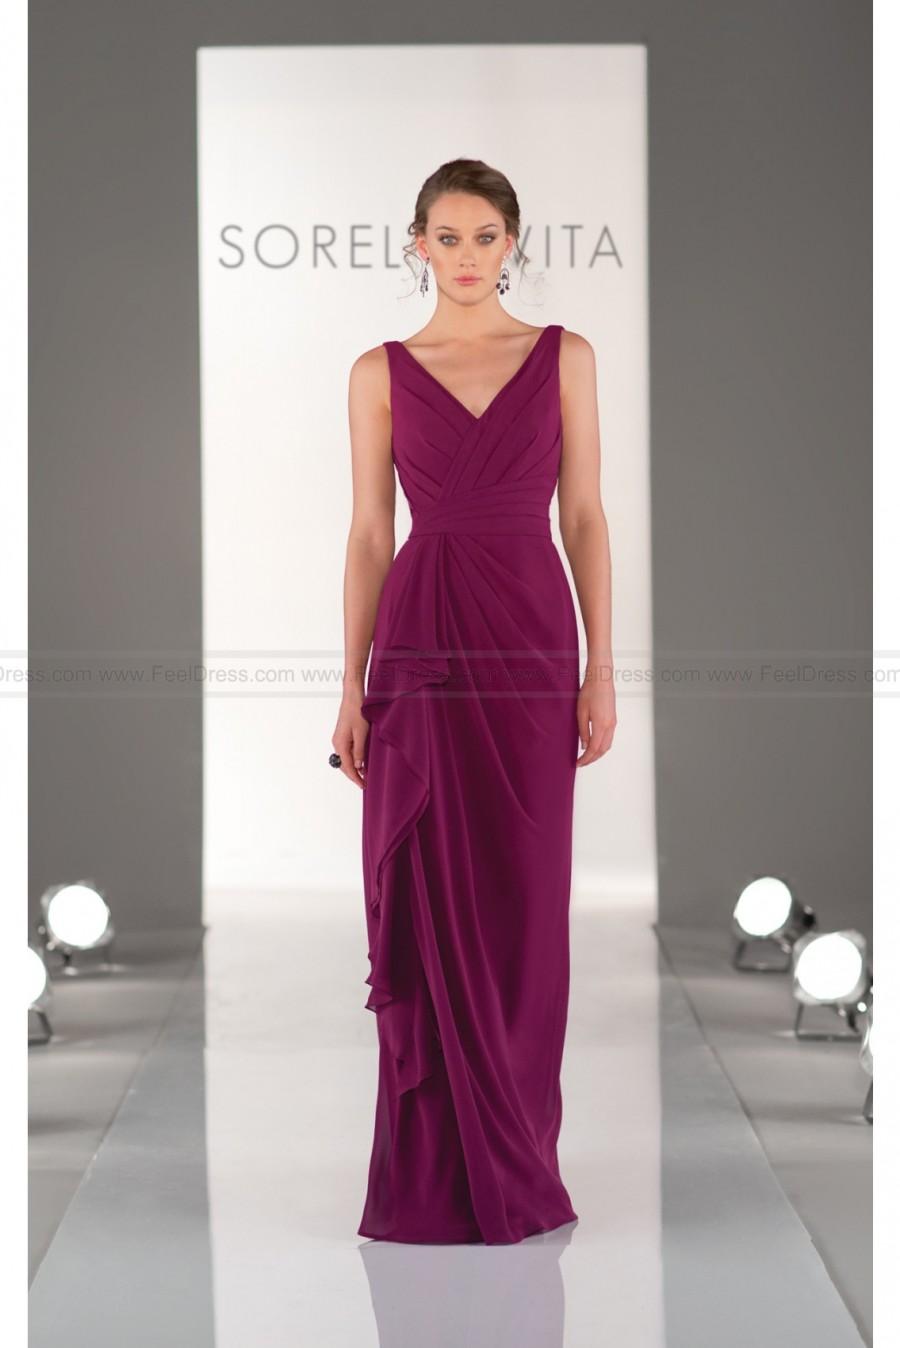 زفاف - Sorella Vita Purple Bridesmaid Dress Style 8338